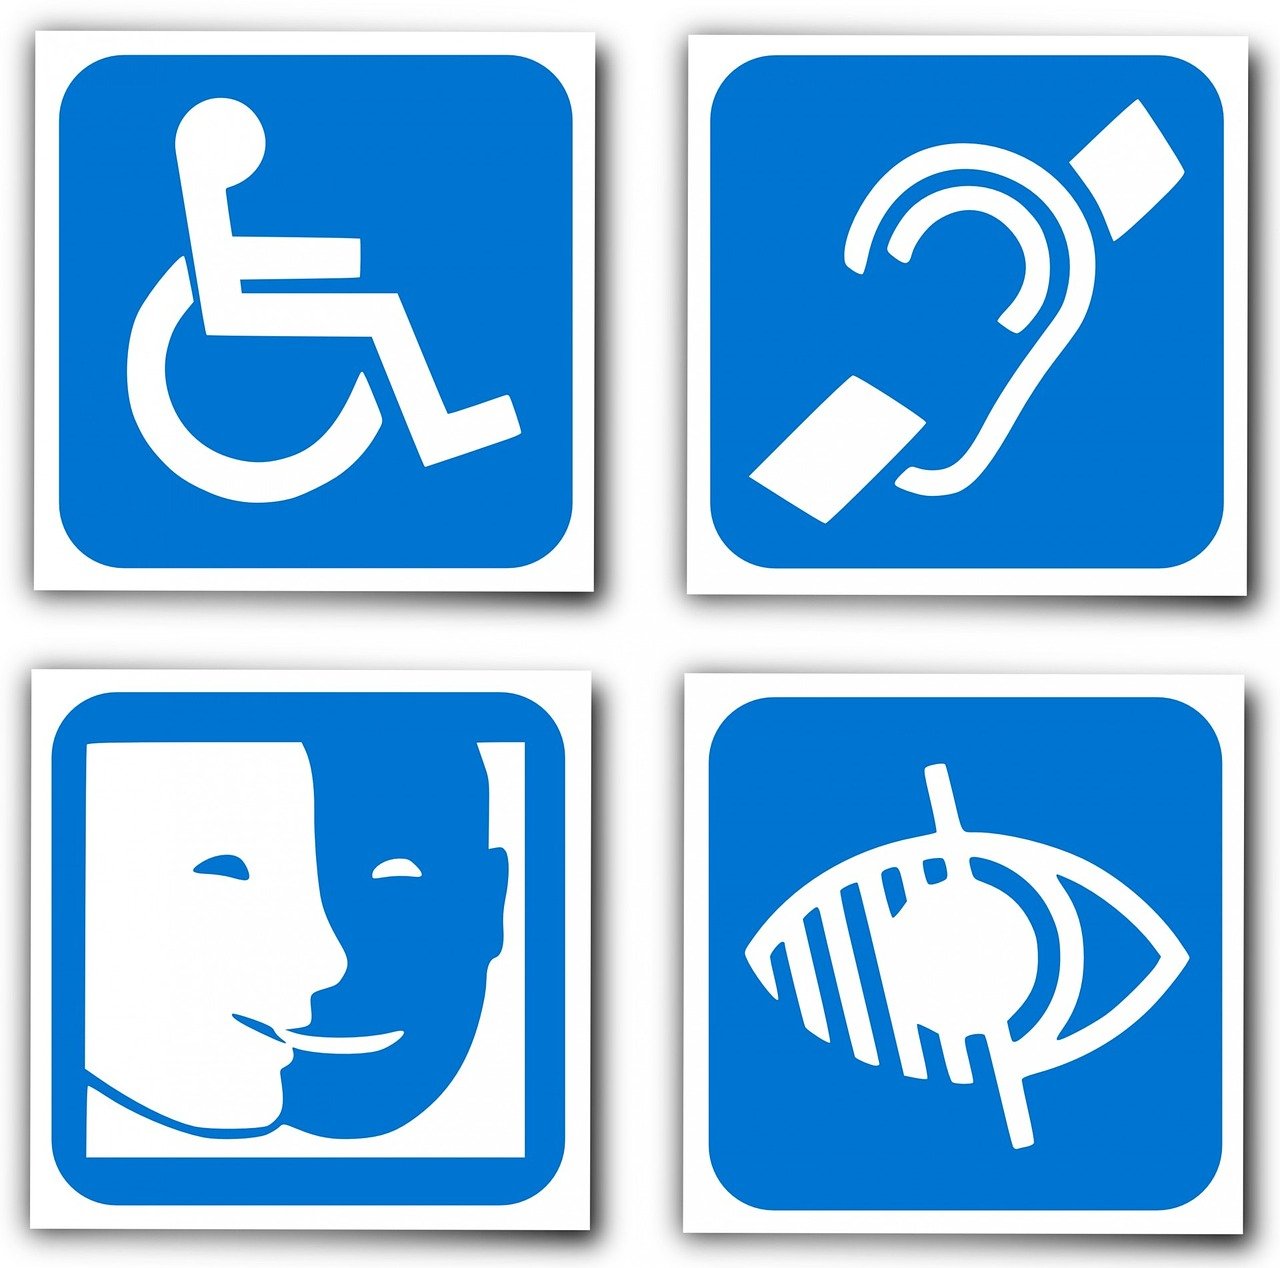 Journée Internationale des Personnes Handicapées